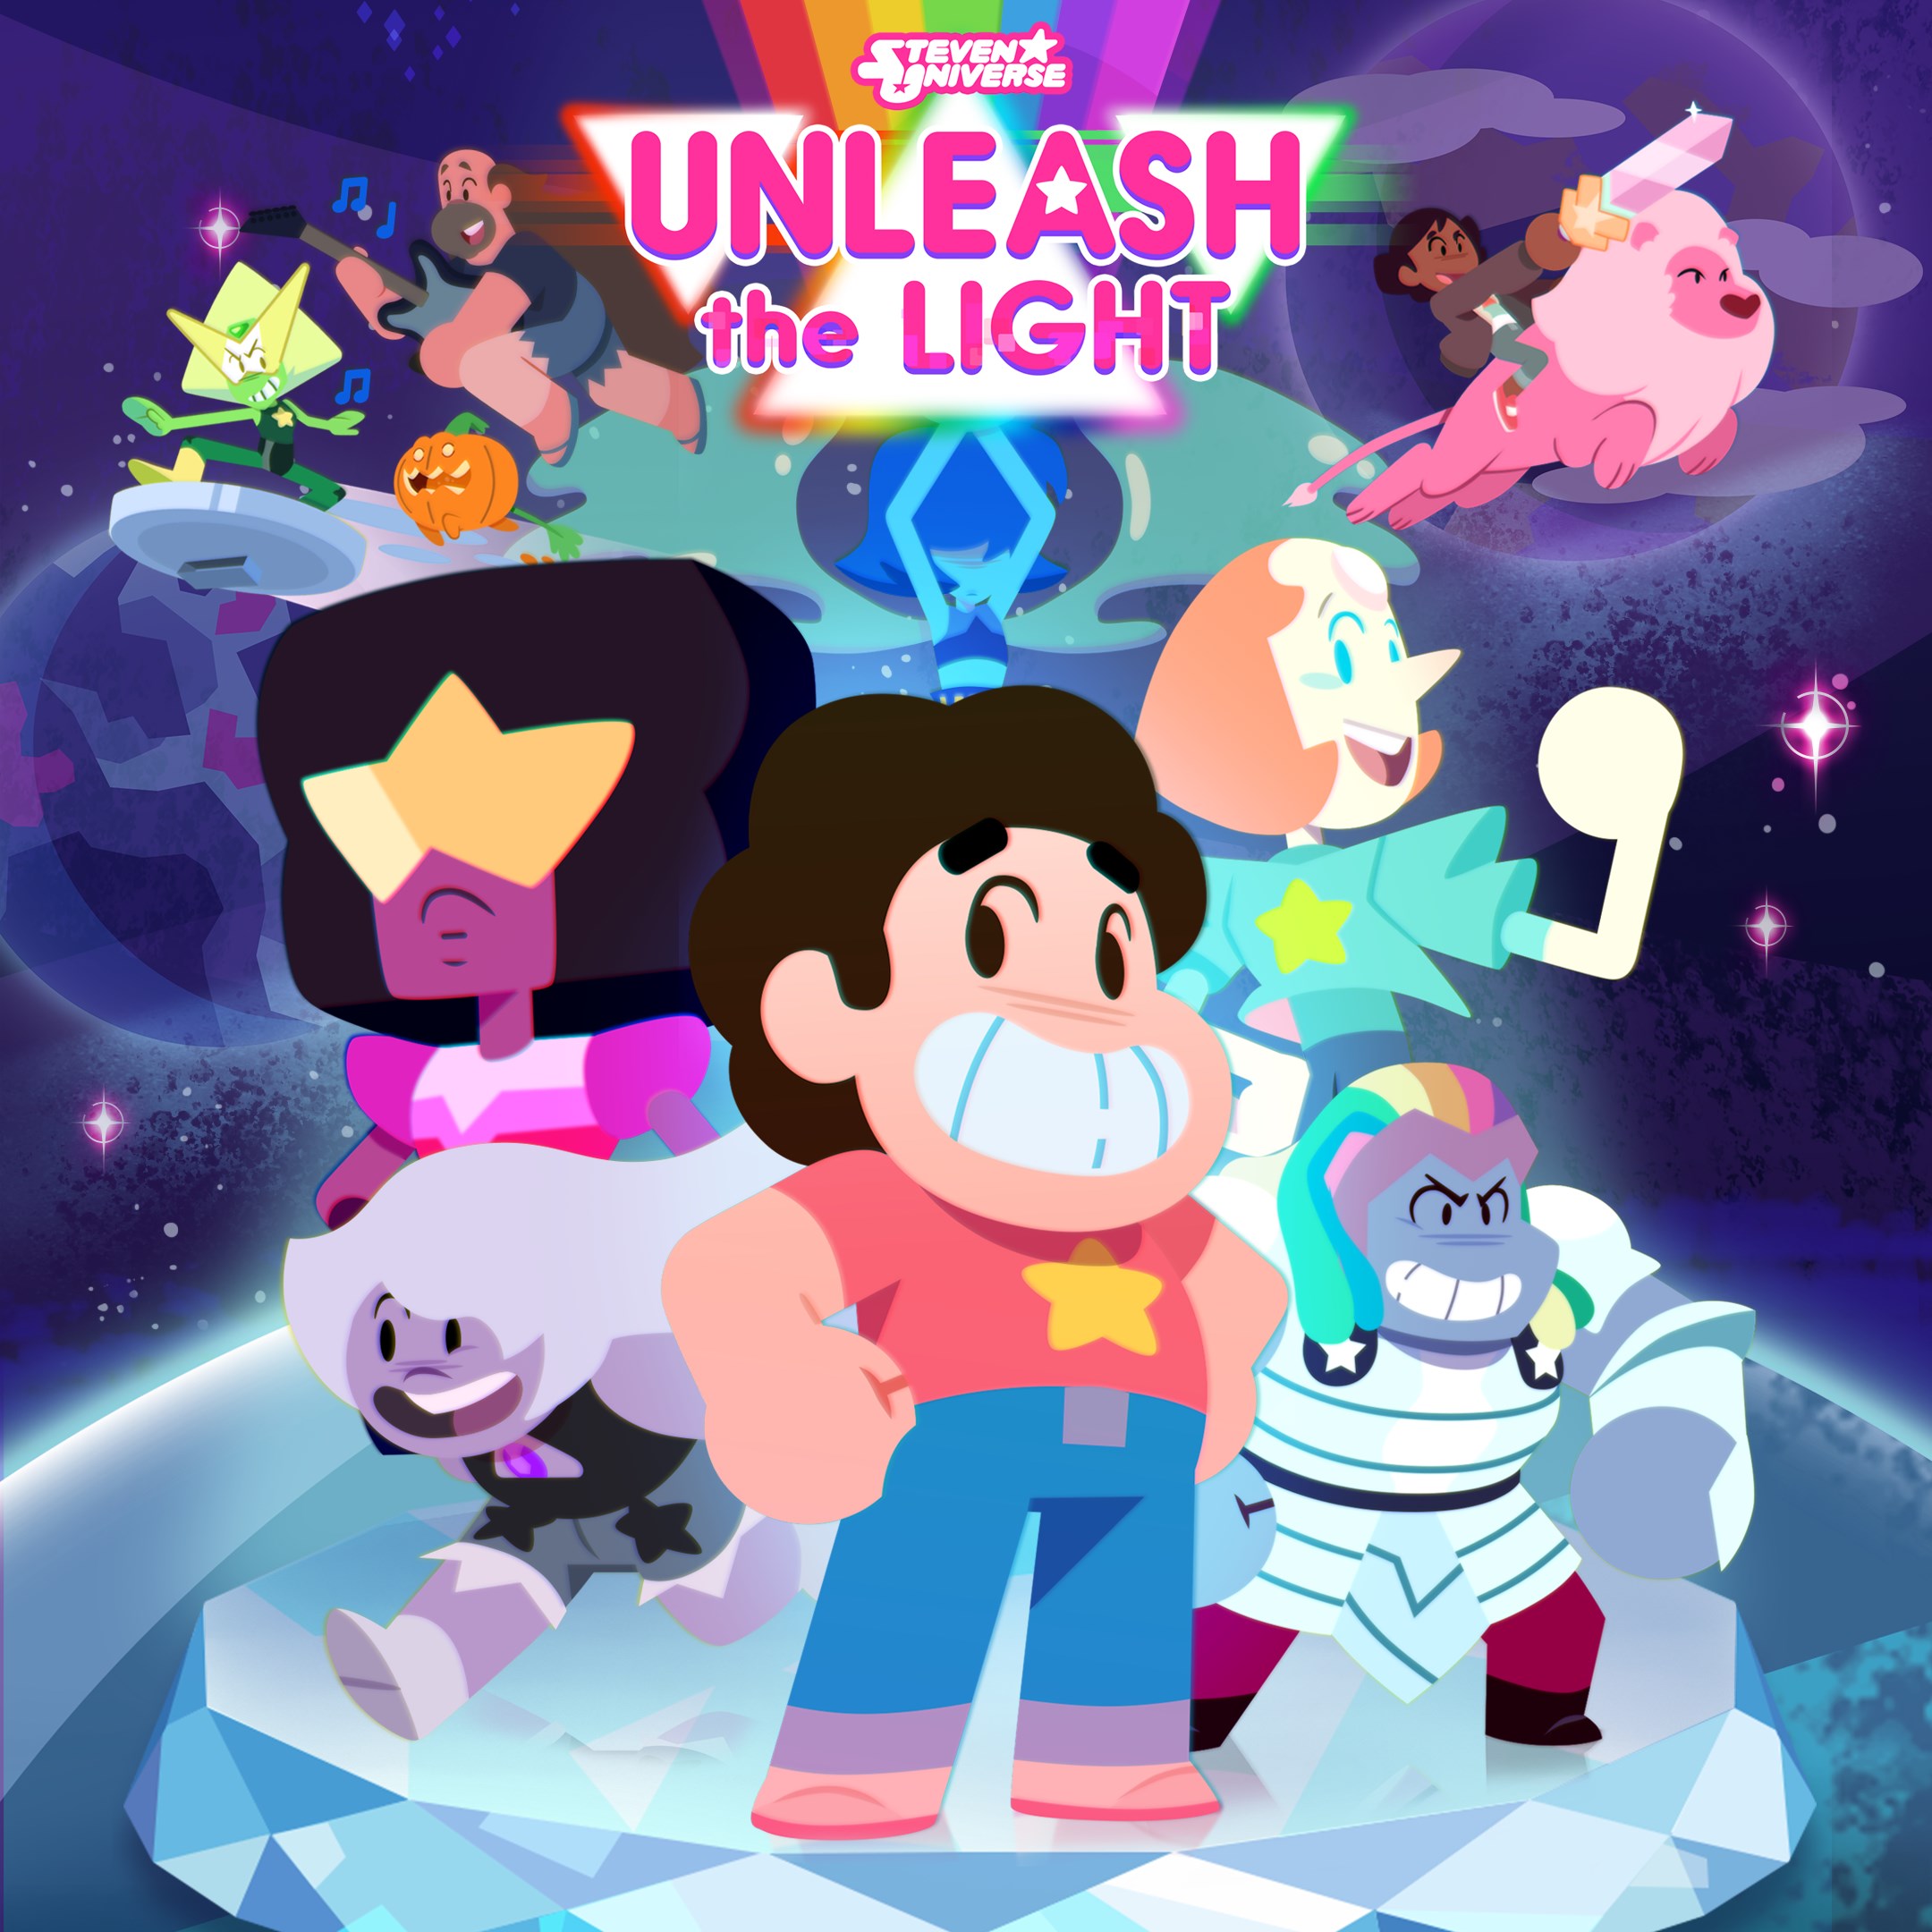 Steven Universe: Déchaîne la lumière